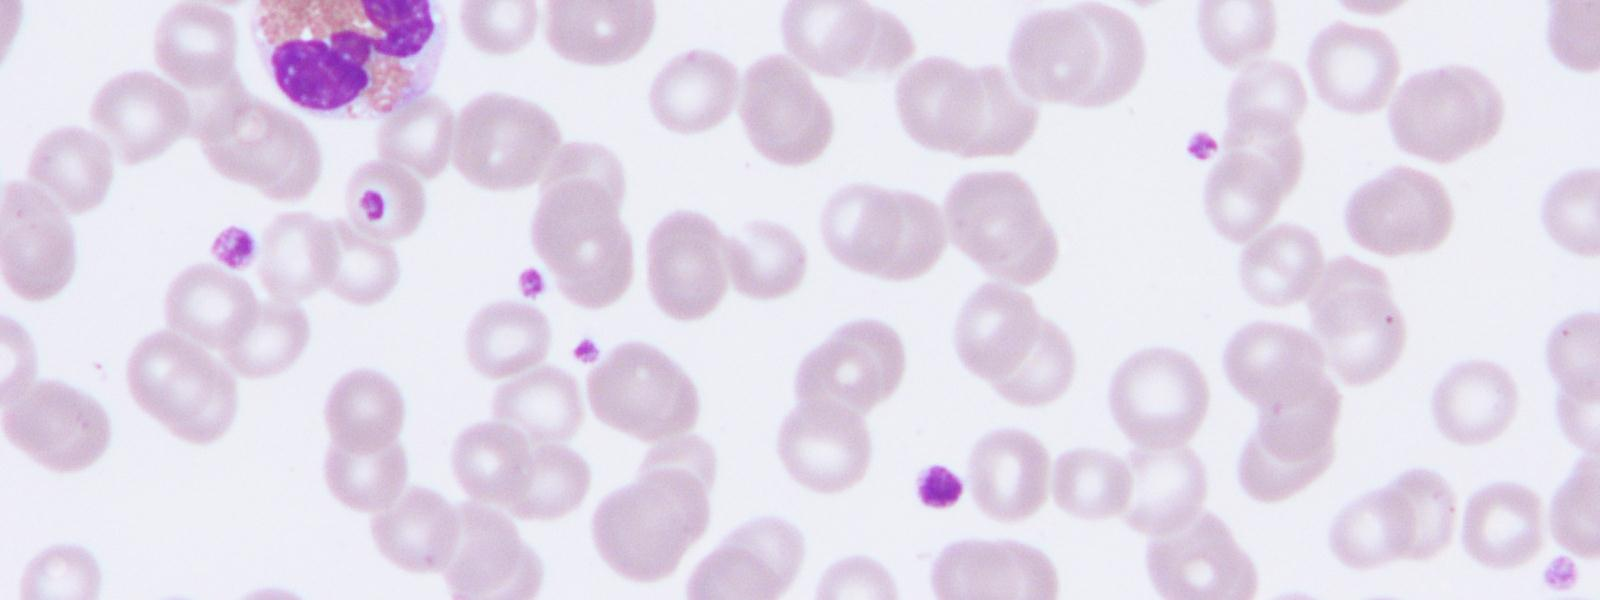 Liuskatumaisen eosinofiilin sytoplasma on tyypillisesti karkea ja siinä on syvänpunaiseksi värjäytyviä granuloita, kun taas liuskatumaisilla basofiileilla granulat ovat tummansinisiä.